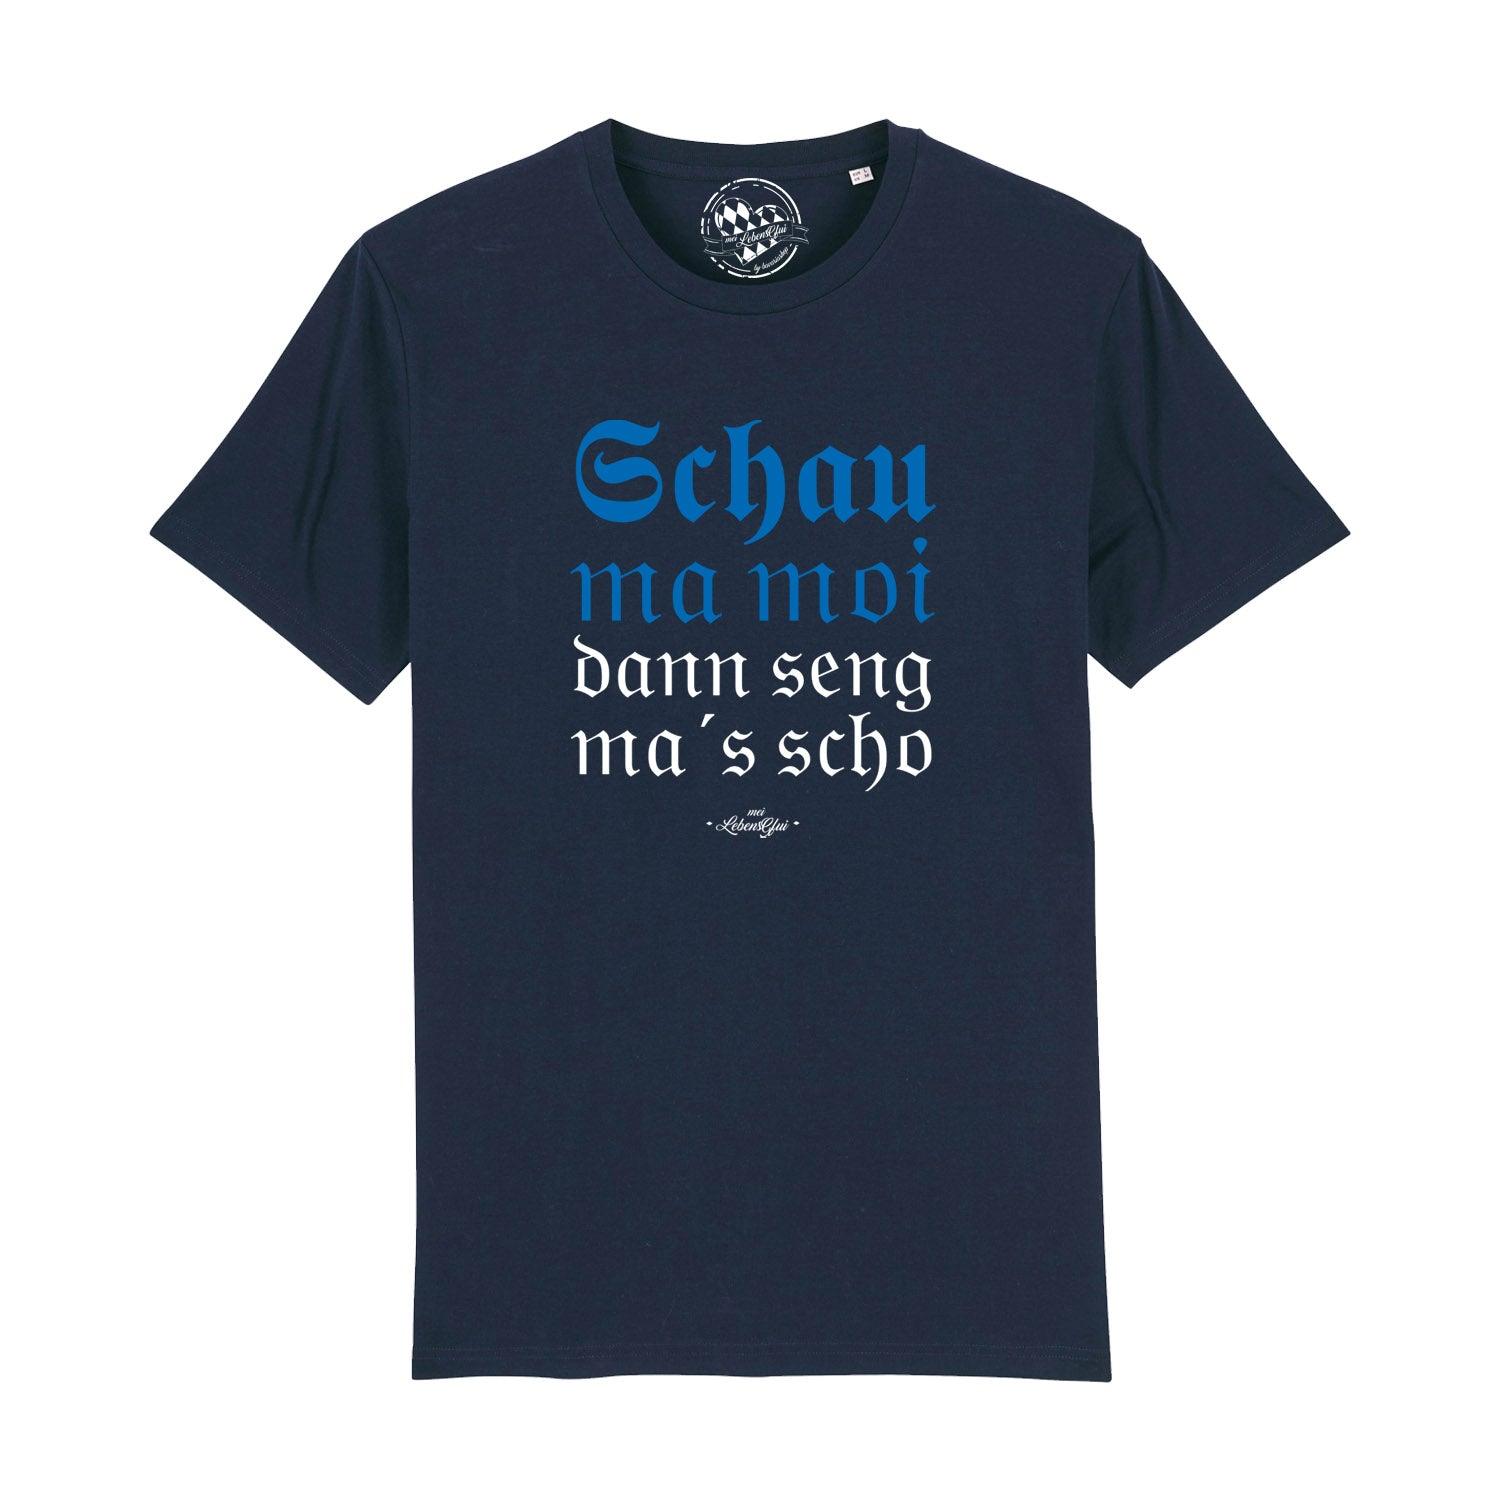 Herren T-Shirt "Schau ma moi" - bavariashop - mei LebensGfui